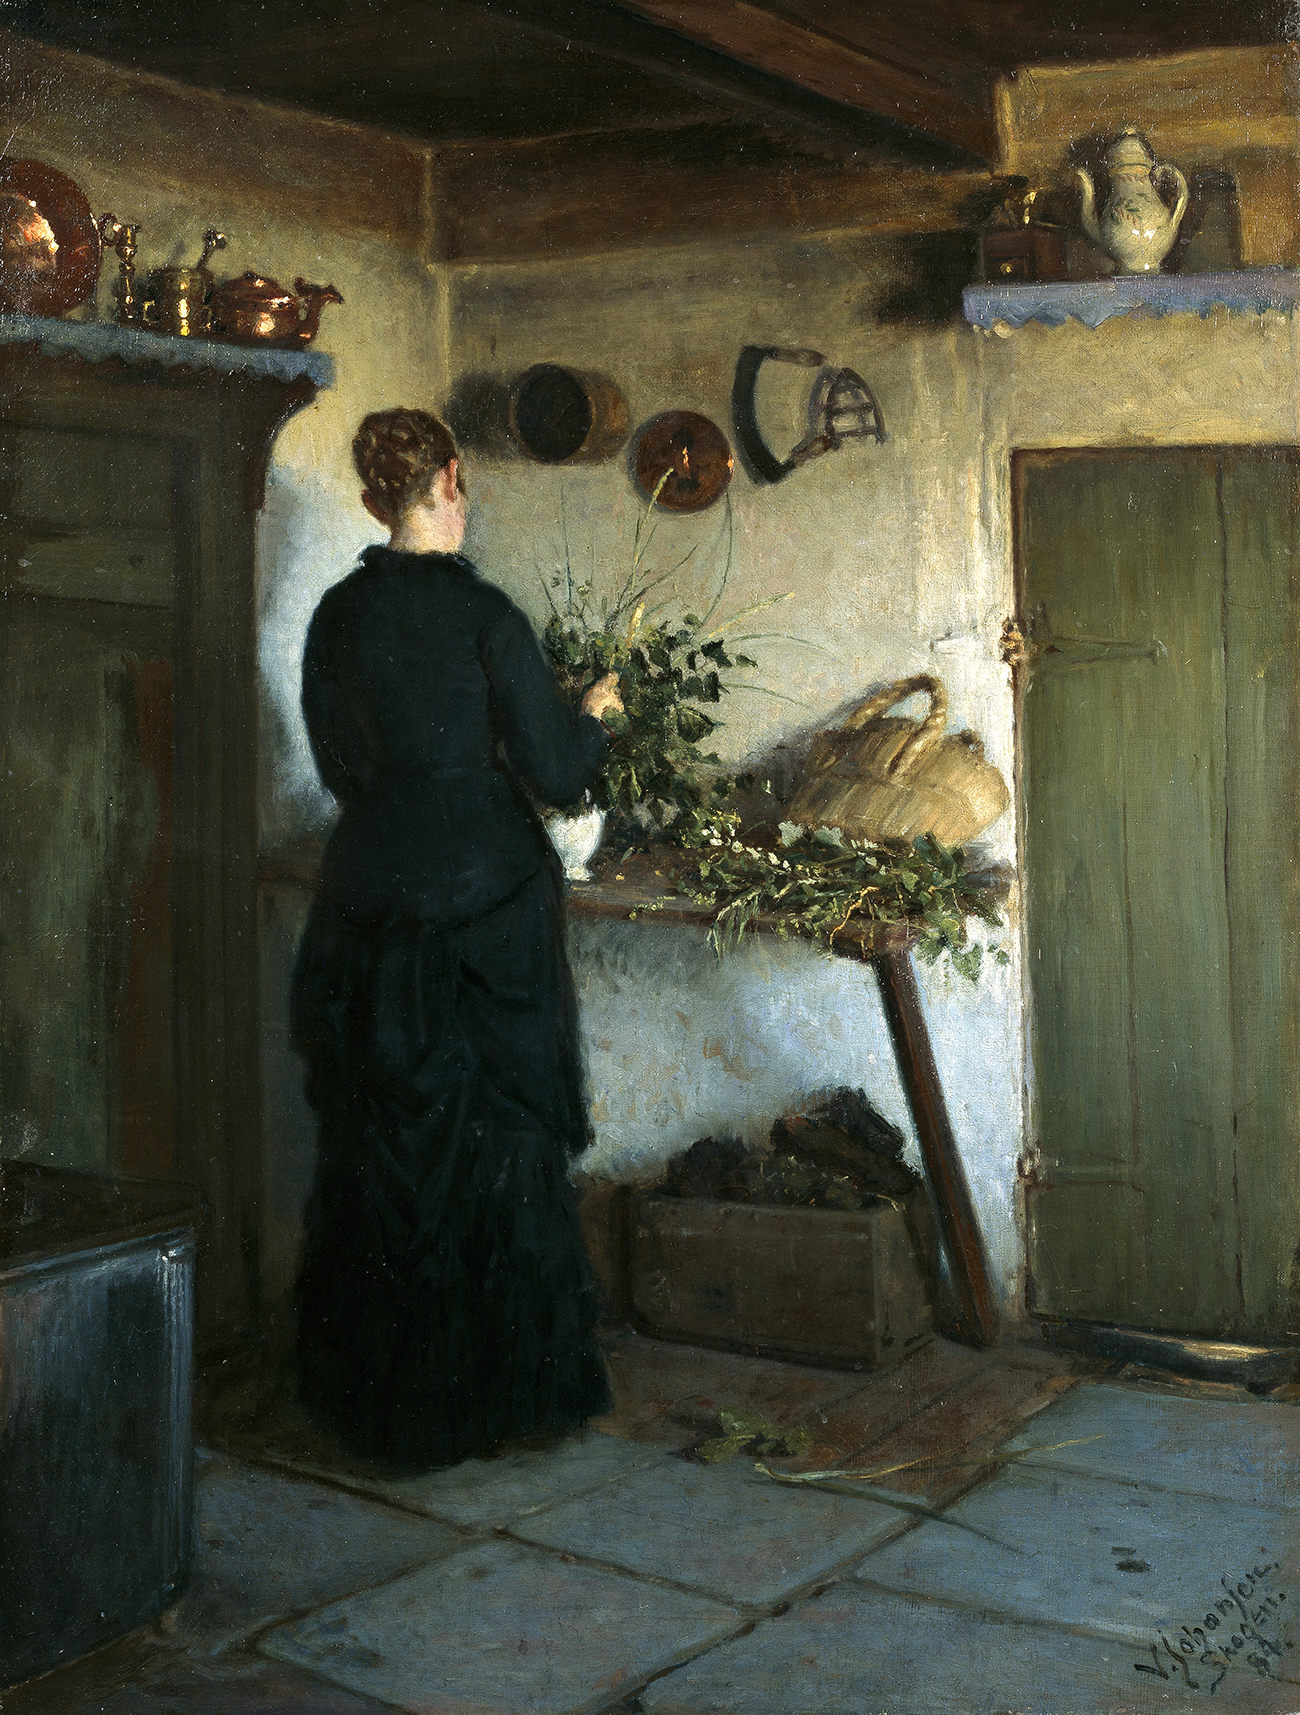 Mutfak içi. Sanatçının eşi çiçek aranjmanı yaparken by Viggo Johansen - 1884 - 84 x 64 cm 